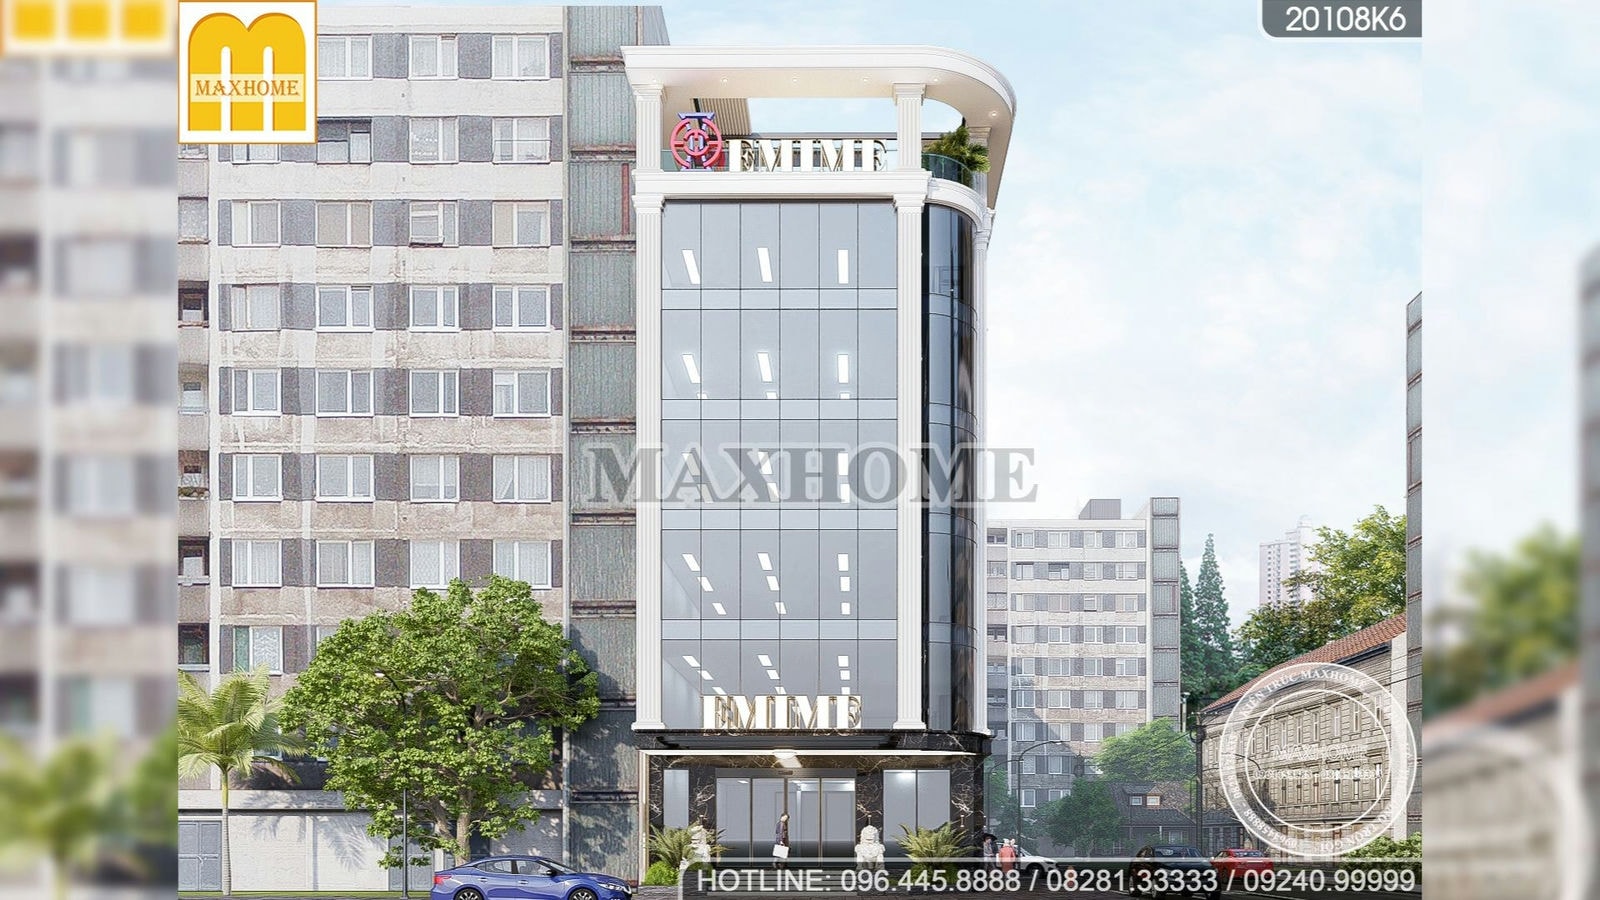 Maxhome thiết kế toà nhà công ty TNHH Bảo An ở Bình Phước | MH00234